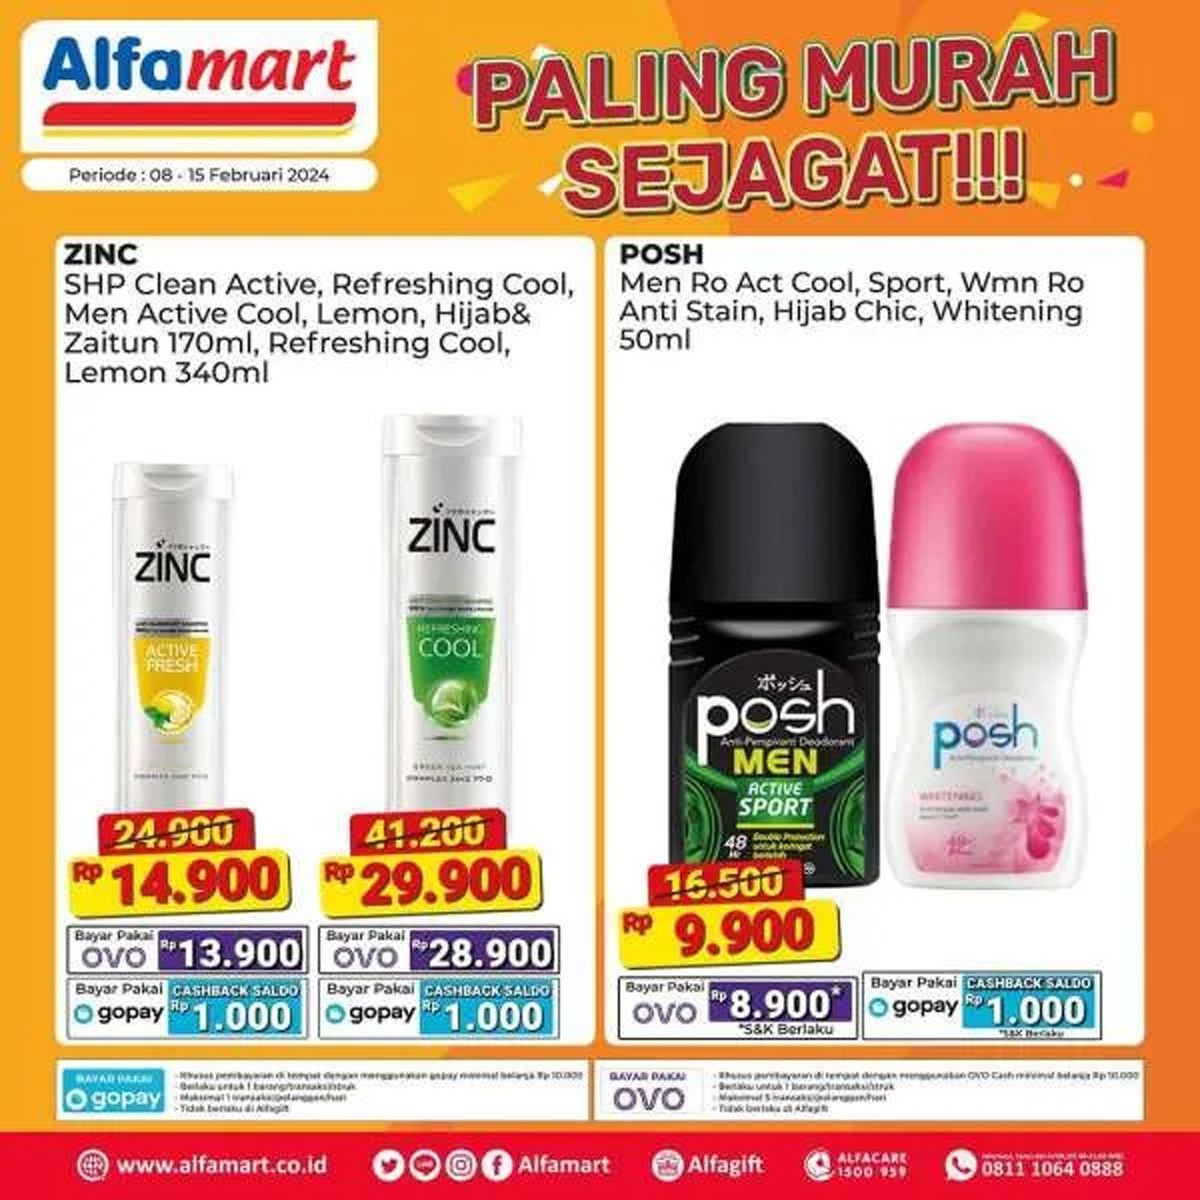  Katalog 6 produk yang dijual dalam program promo Alfamart Paling Murah Sejagat periode 8 - 15 Februari 2024./Instagram Alfamart.